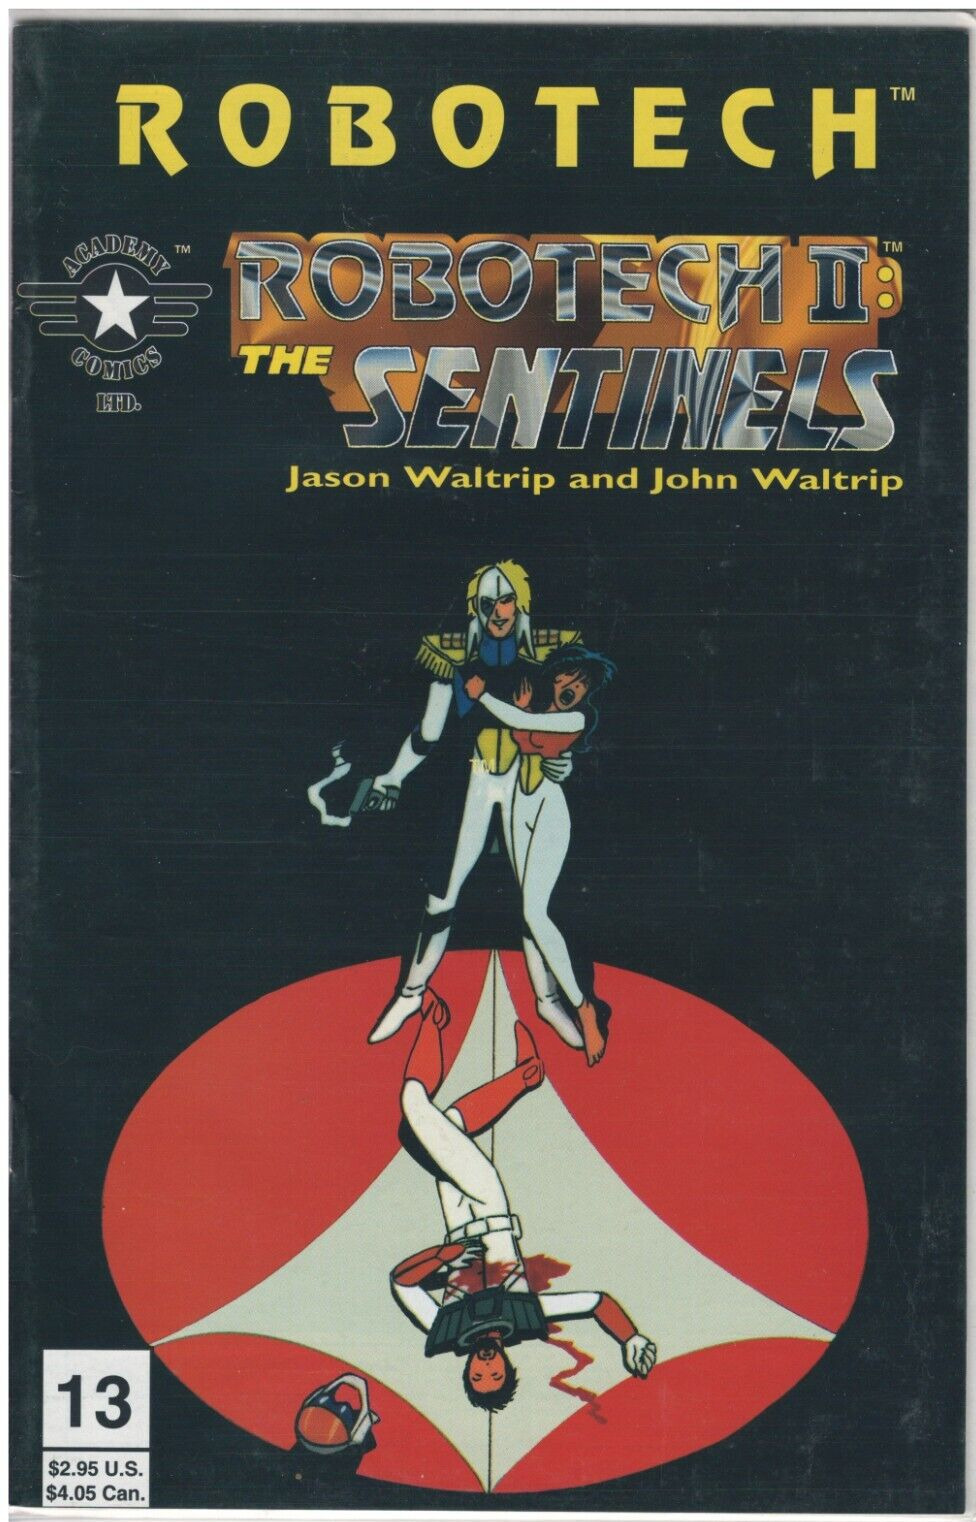 RARE - Robotech II - The Sentinels 13 - 1996 - Academy Comics Ltd. - MINT Cond